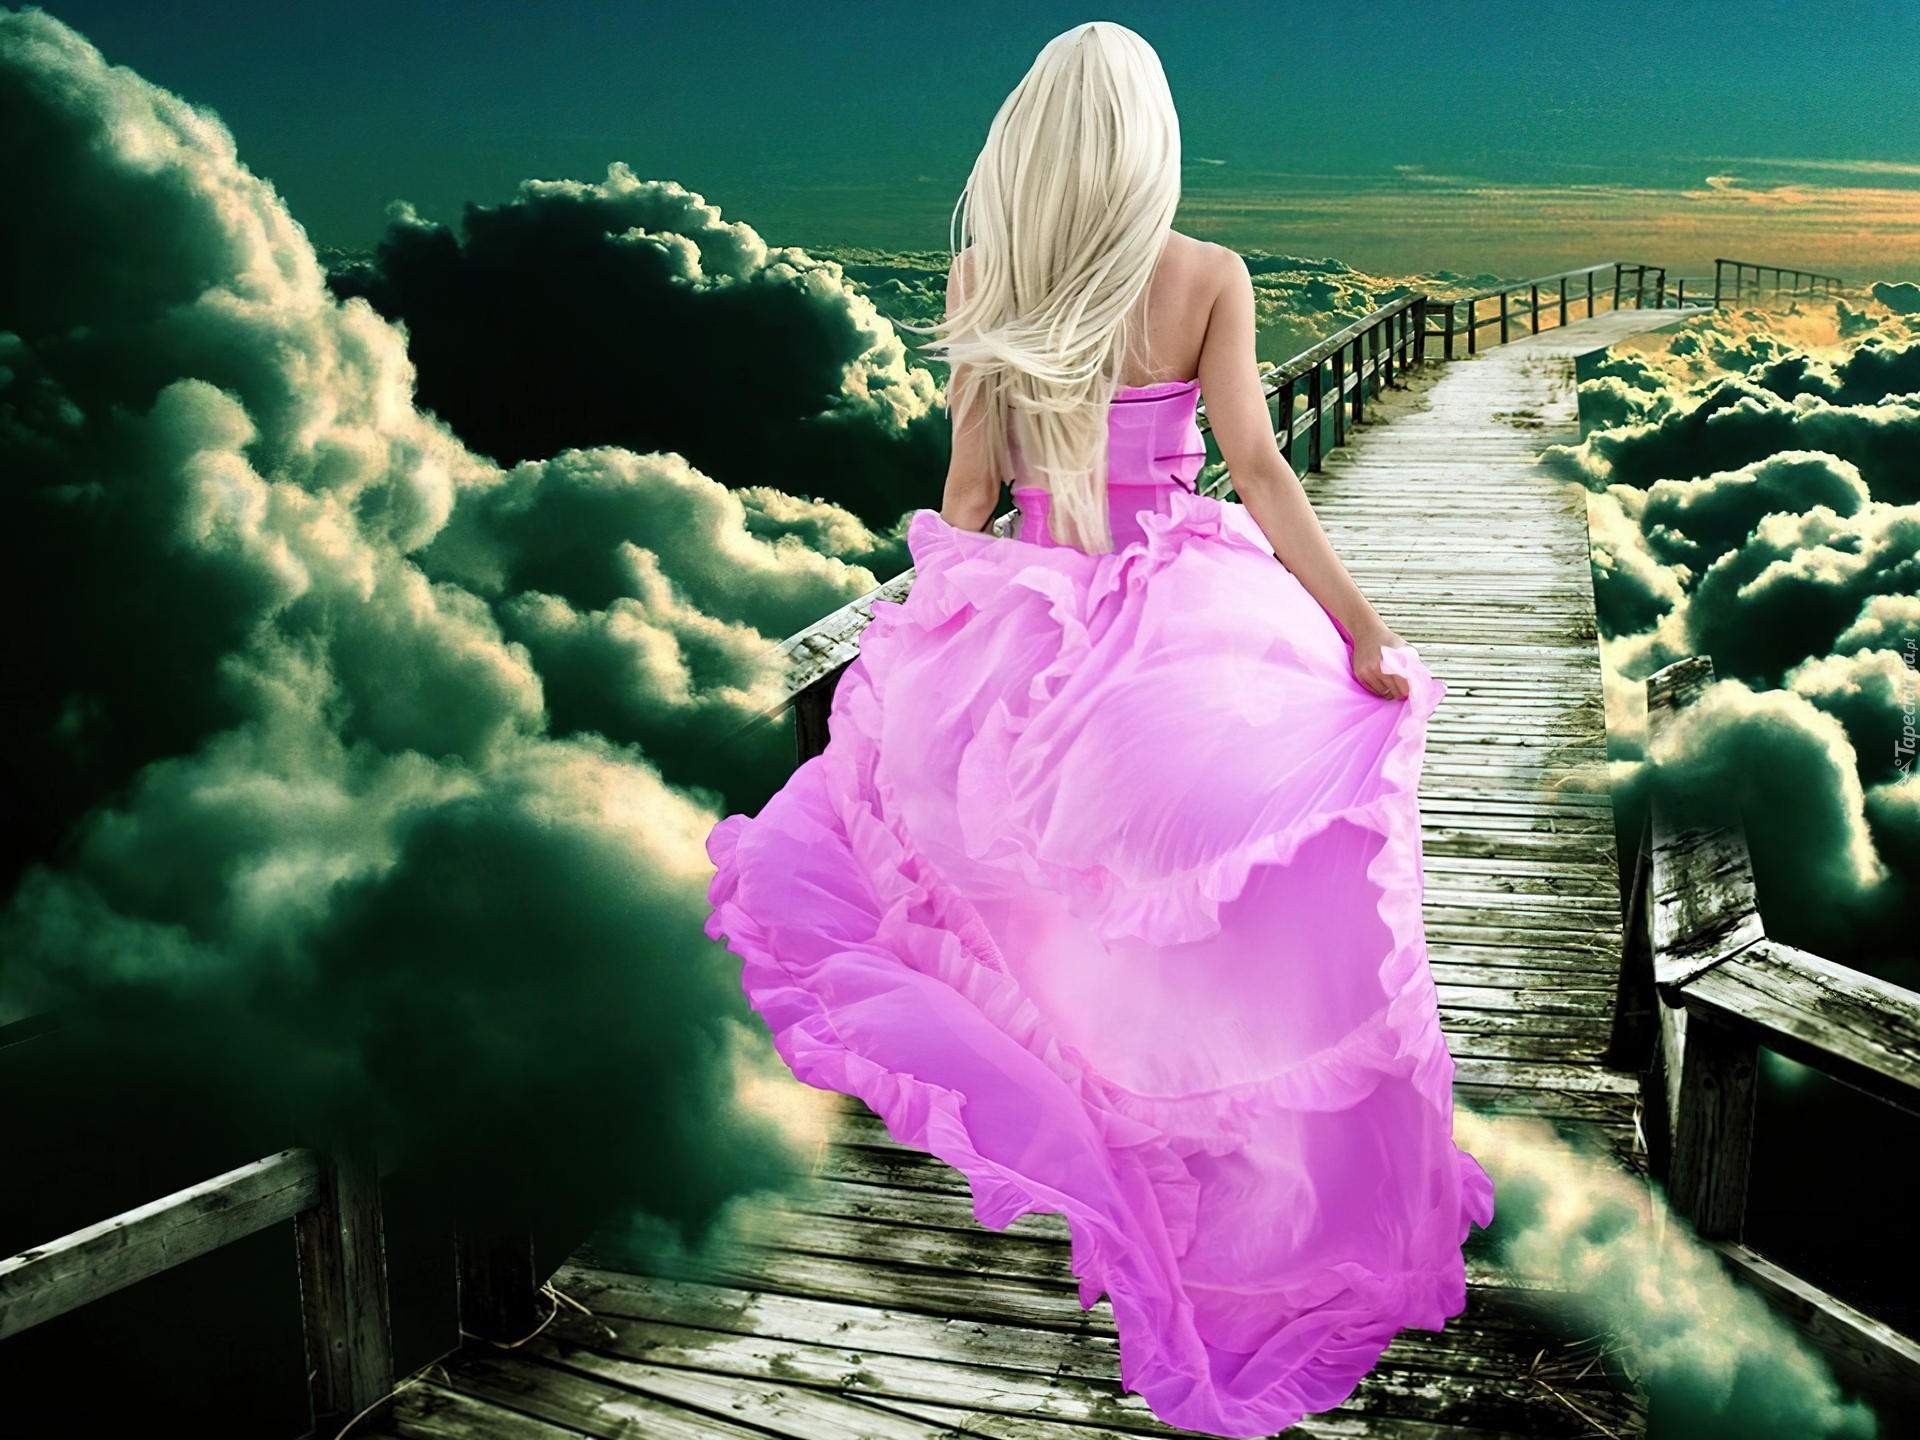 Блондинка в розовом платье. Девушка в платье красивая. Красивые платья для девушек длинные. Девушка в розовом платье.